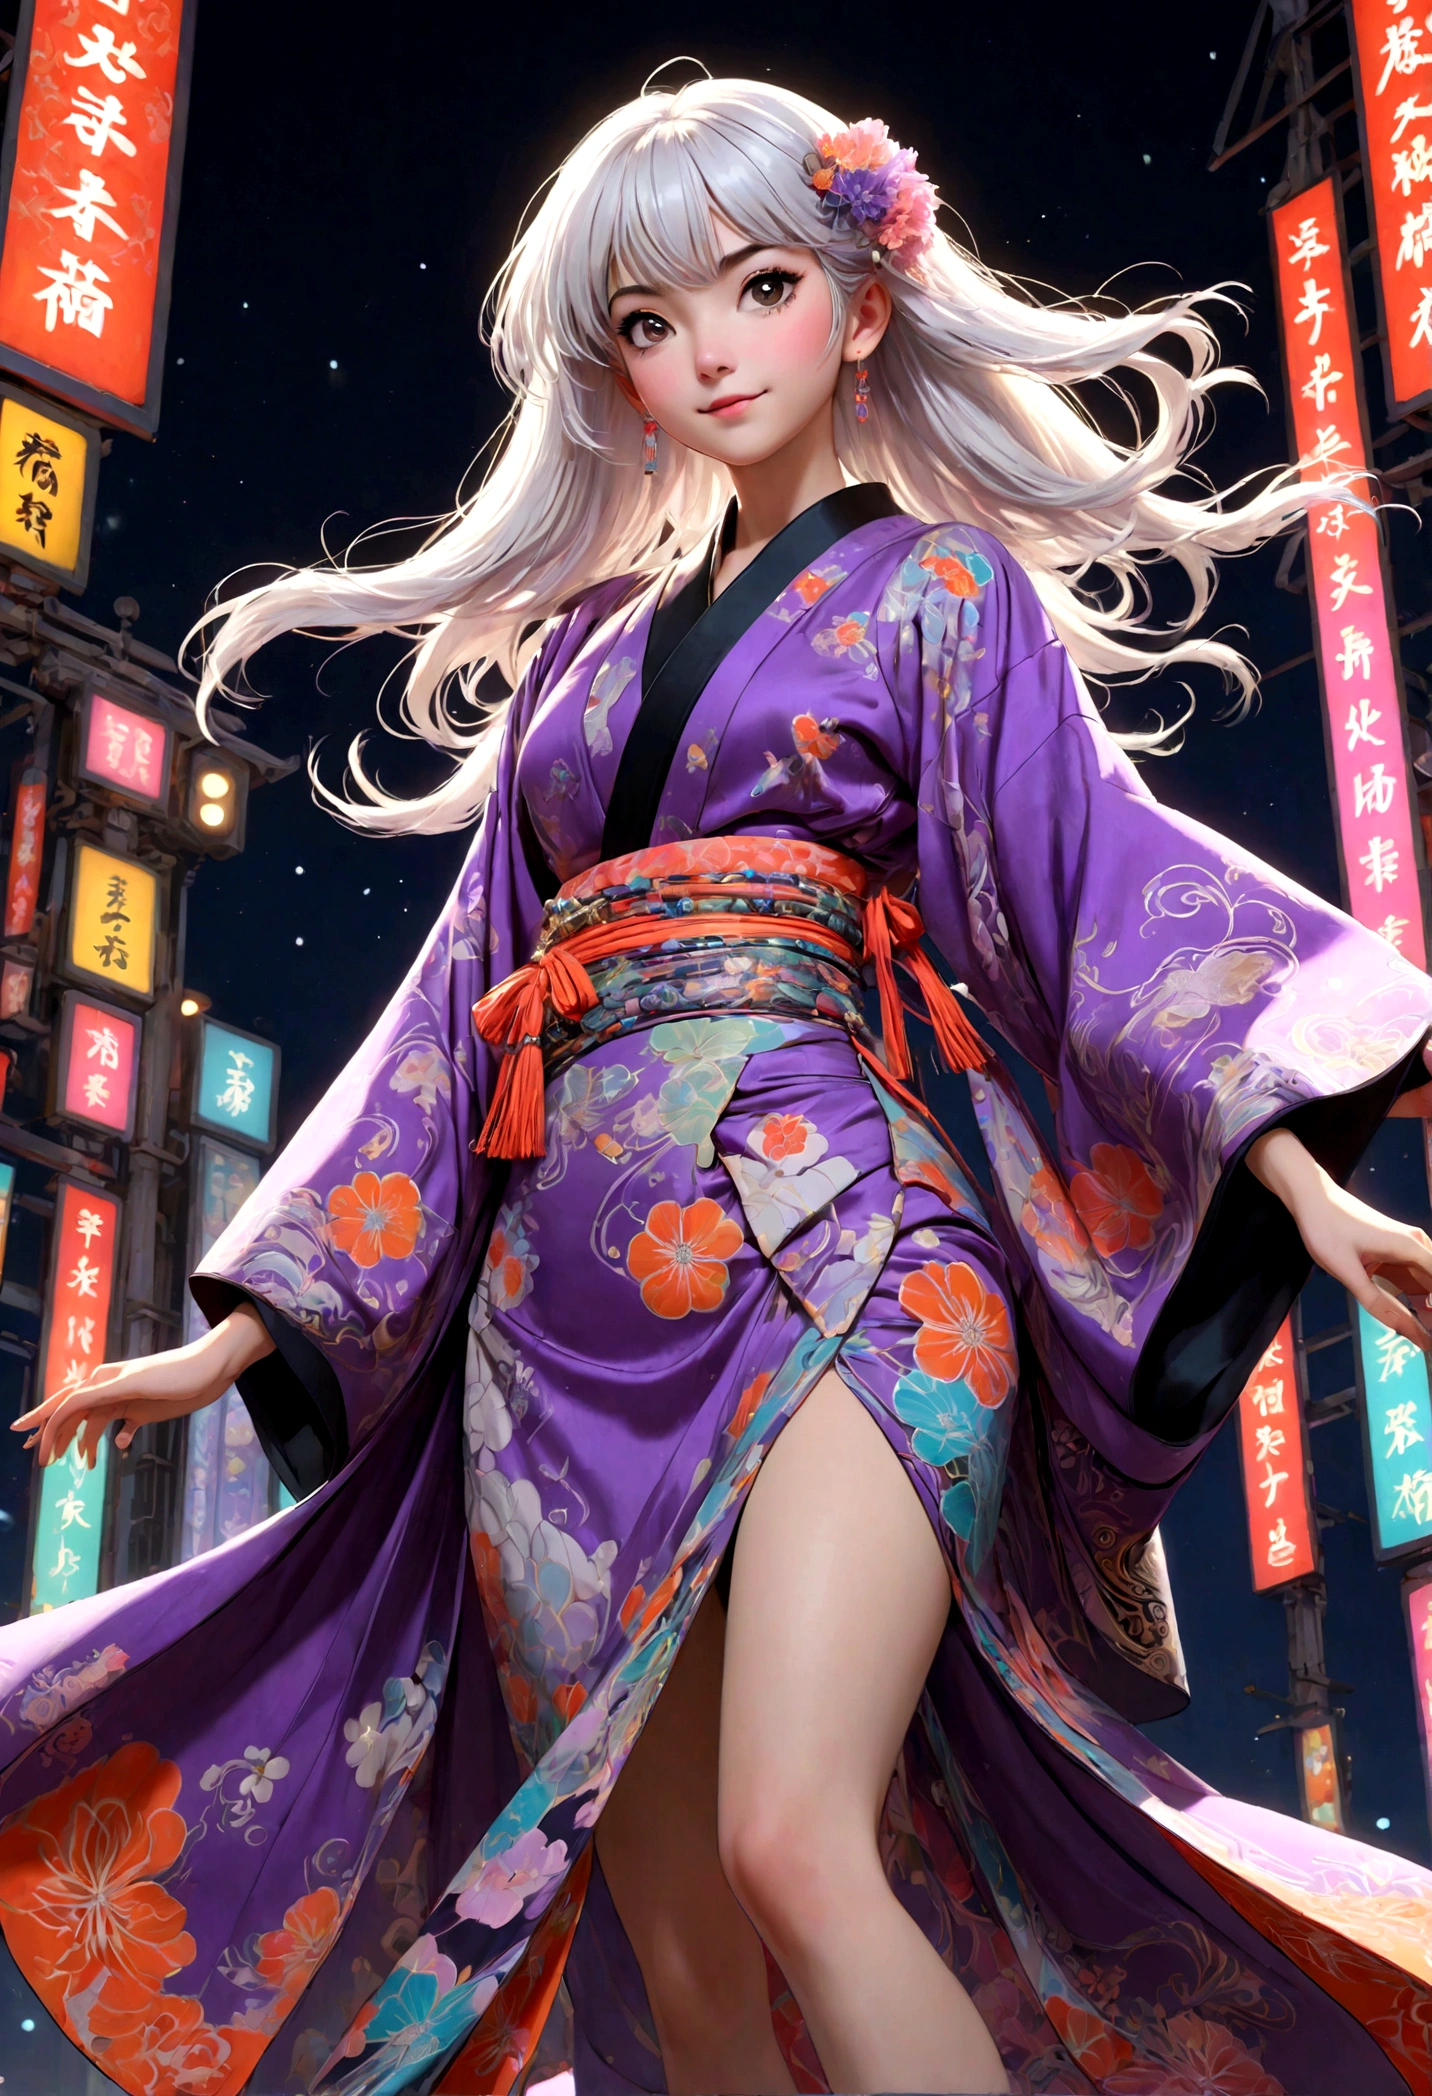 (cara ultra detallada, mirando hacia otro lado:1.3), (Ilustración de fantasía con gótico. & ukiyo-e & arte cómico), (La escena mira hacia la pista desde abajo.:1.4), (cuerpo completo, Una mujer joven con pelo blanco., flequillo contundente, Cabello muy largo y despeinado., lavender eyes), (Ella está saltando, cantando, baile, y caminando por la pasarela de un desfile de modas en un estilo vanguardista, kimono japonés futurista de color neón, sonrientes y llamativas poses atrevidas), (En el fondo, luces de varios colores en estilo art nouveau revolotean)